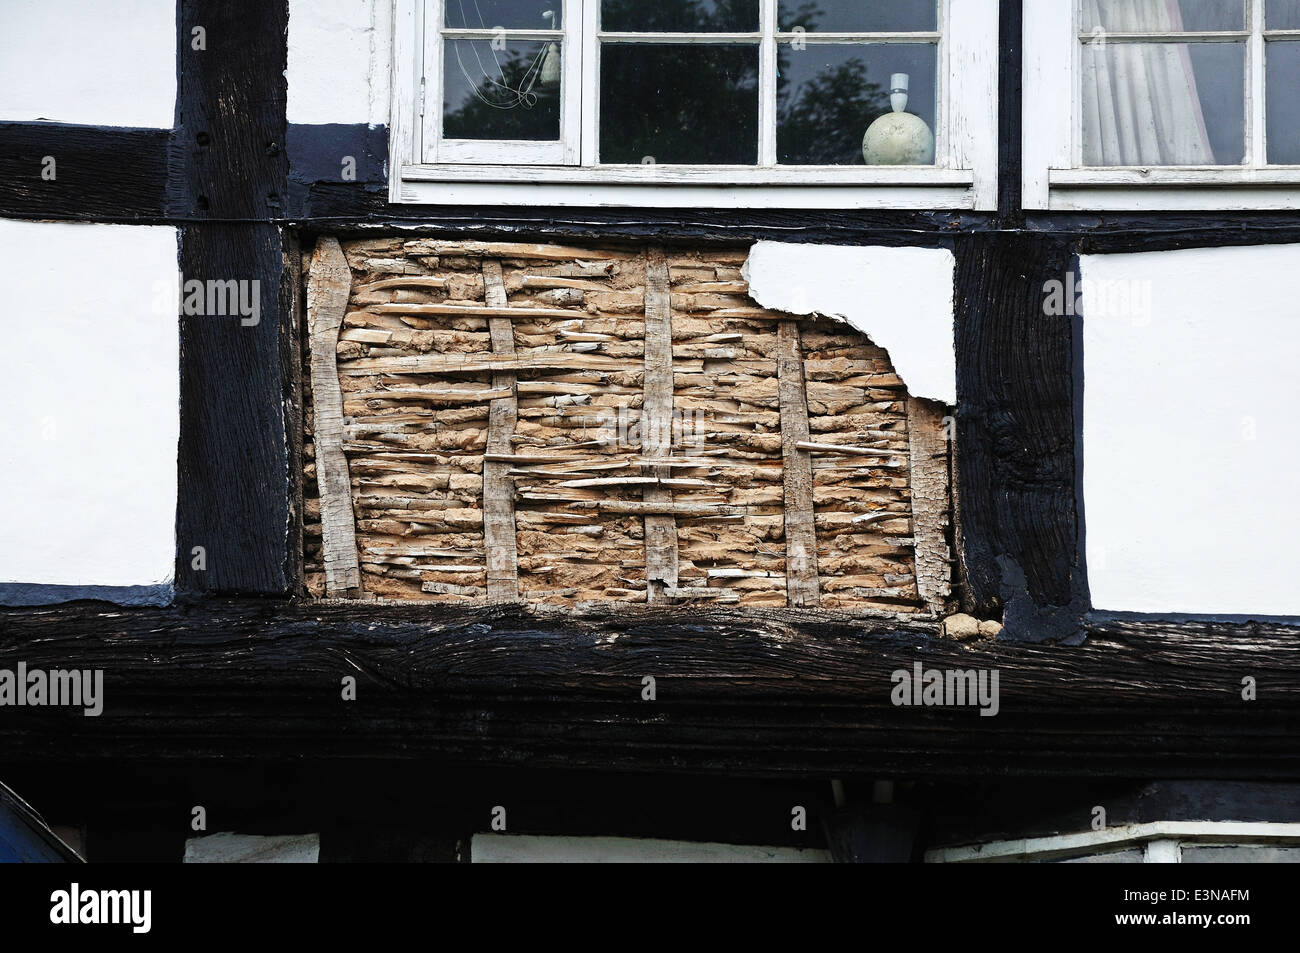 El panel pequeño de acacia y barro que está siendo restaurado en un tradicional edificio de madera blanca, Pembridge, Inglaterra, Reino Unido. Foto de stock